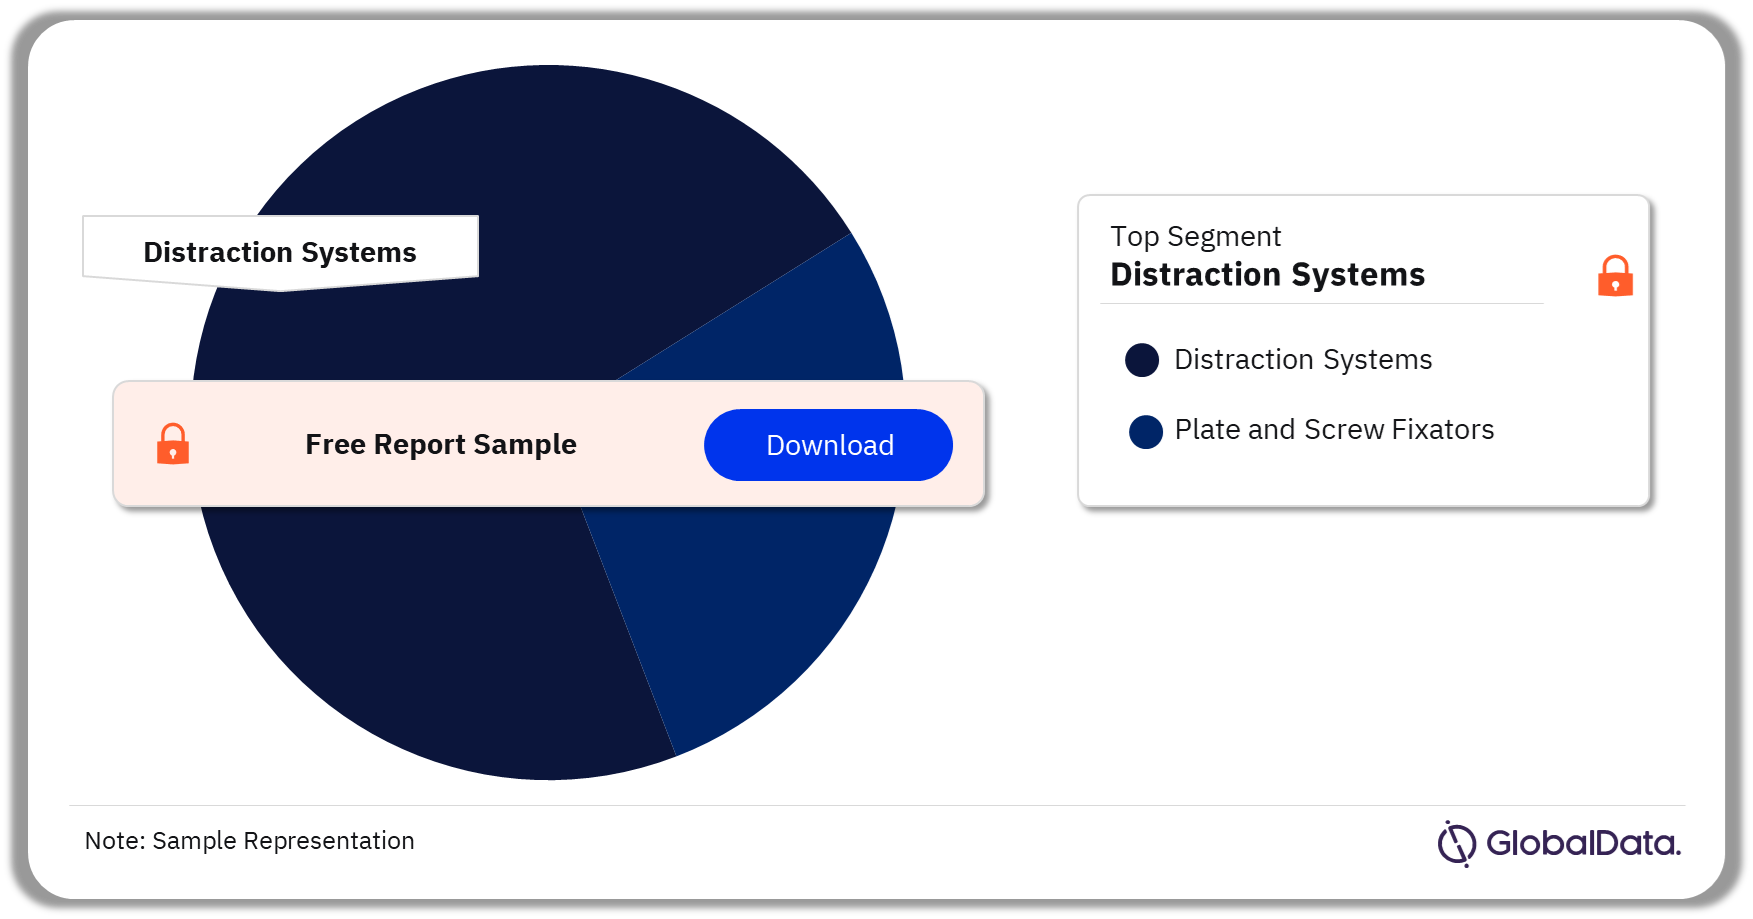 Cranio Maxillofacial Fixation Market Analysis by Segments, 2023 (%)